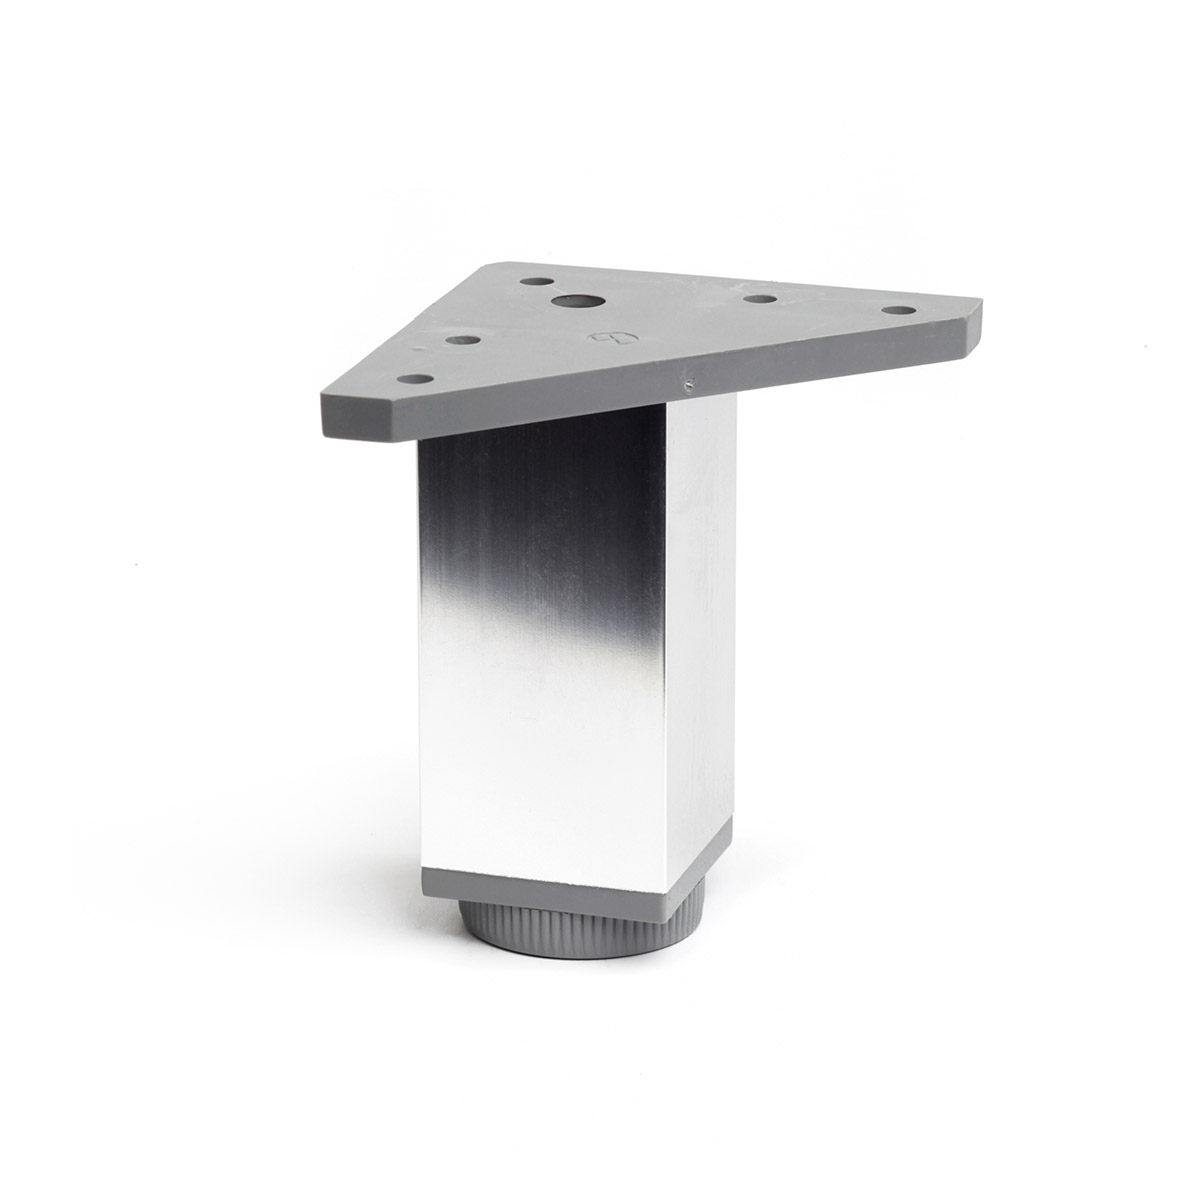 Pied carré réglable en aluminium d'une hauteur de 100 mm et finition chrome brillant. Dimensions: 40x40x100 mm